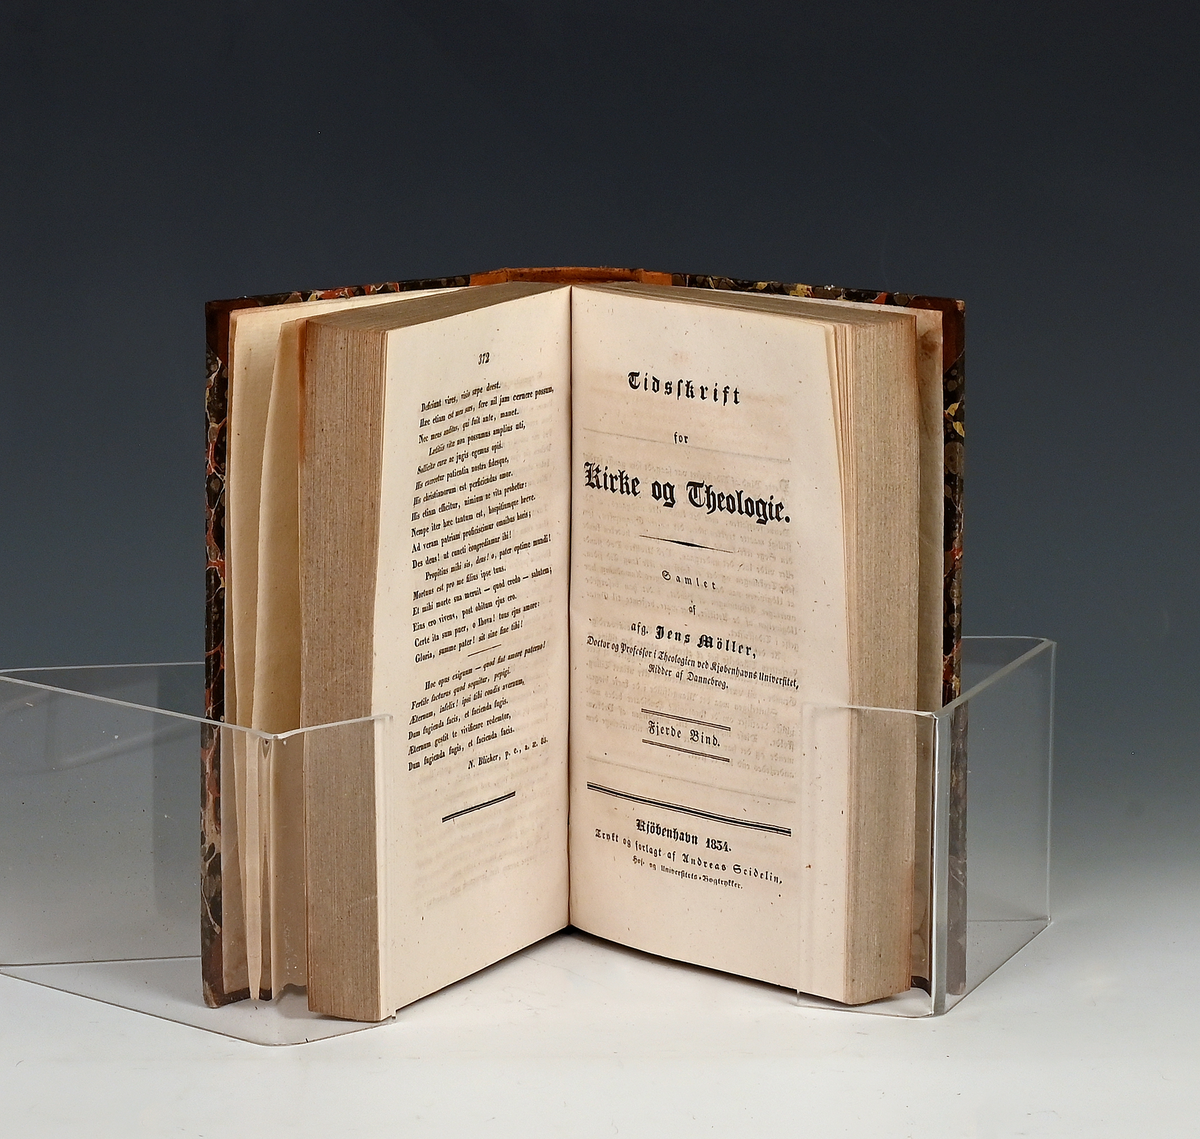 Tidsskrift for kirke og Theologie. Udg. af Jens Møller. I-IV
Kbhv. 1832.

Fjerde bind. Bundet sammen med bind tre. 1513-1514 i ett bind.